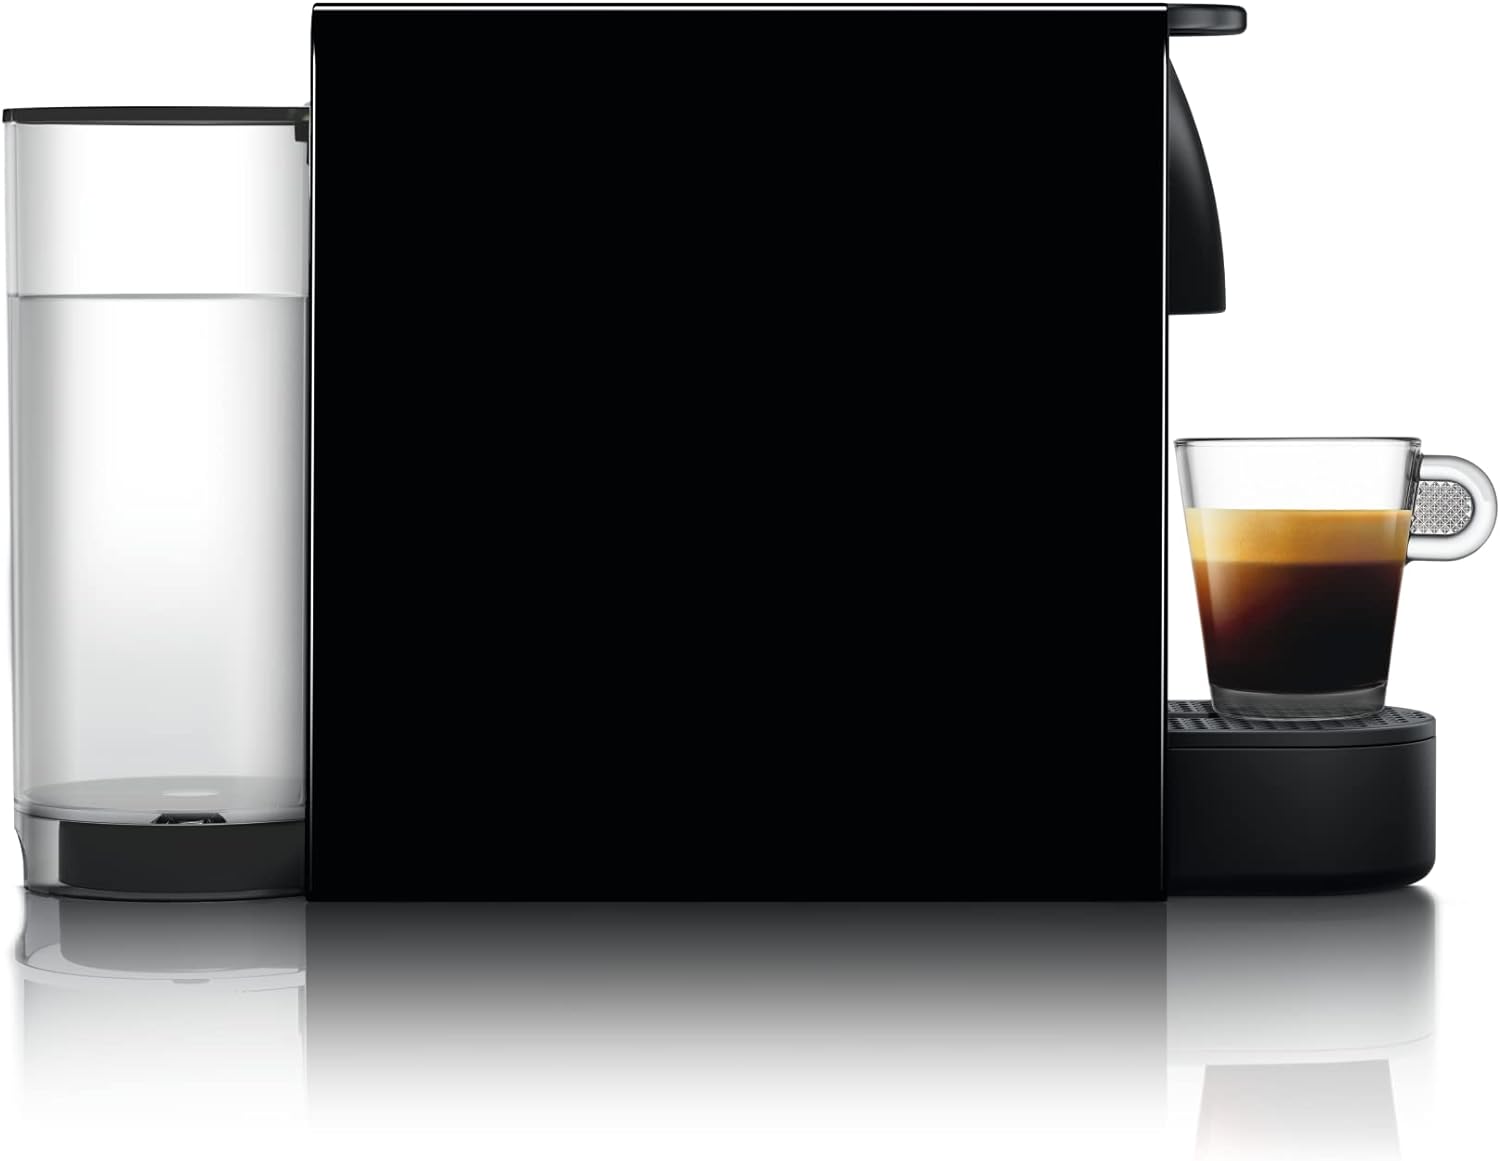 Nespresso Essenza Mini Espresso Machine by Breville, Piano Black - $110